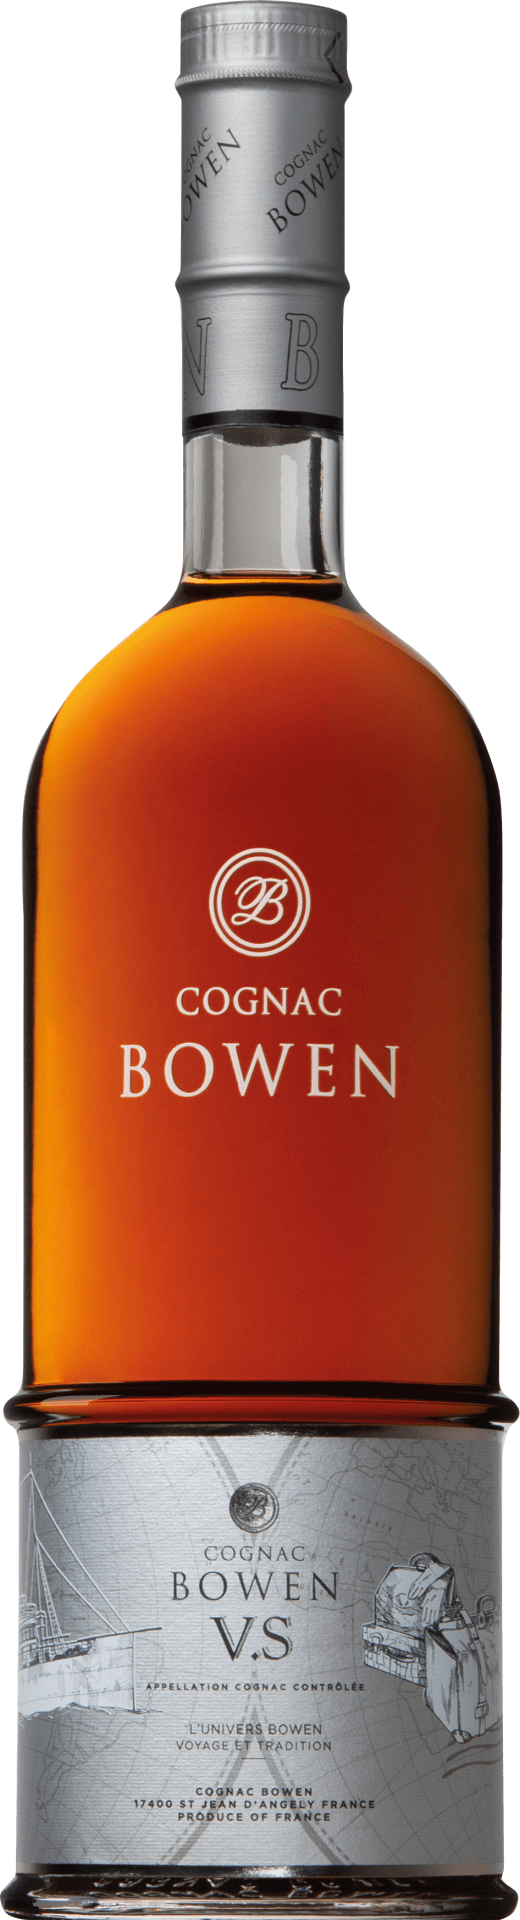 Cognac Bowen Cognac Bowen VS 2-3 Jahre - 0.7 l